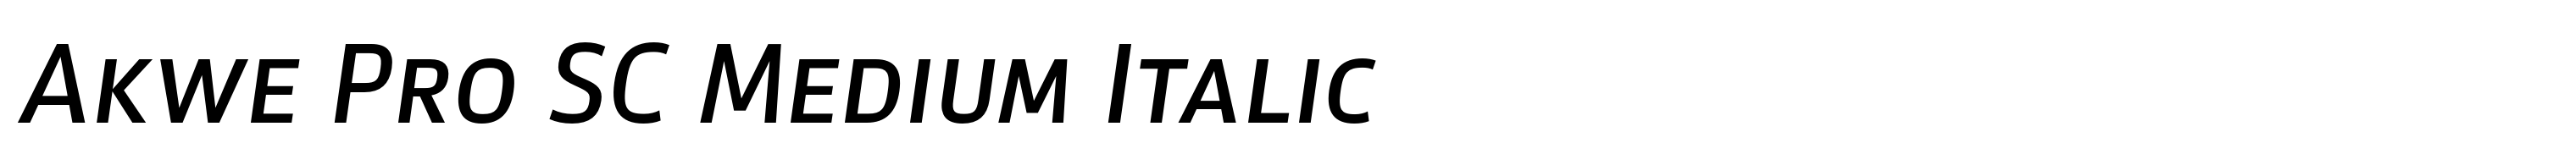 Akwe Pro SC Medium Italic